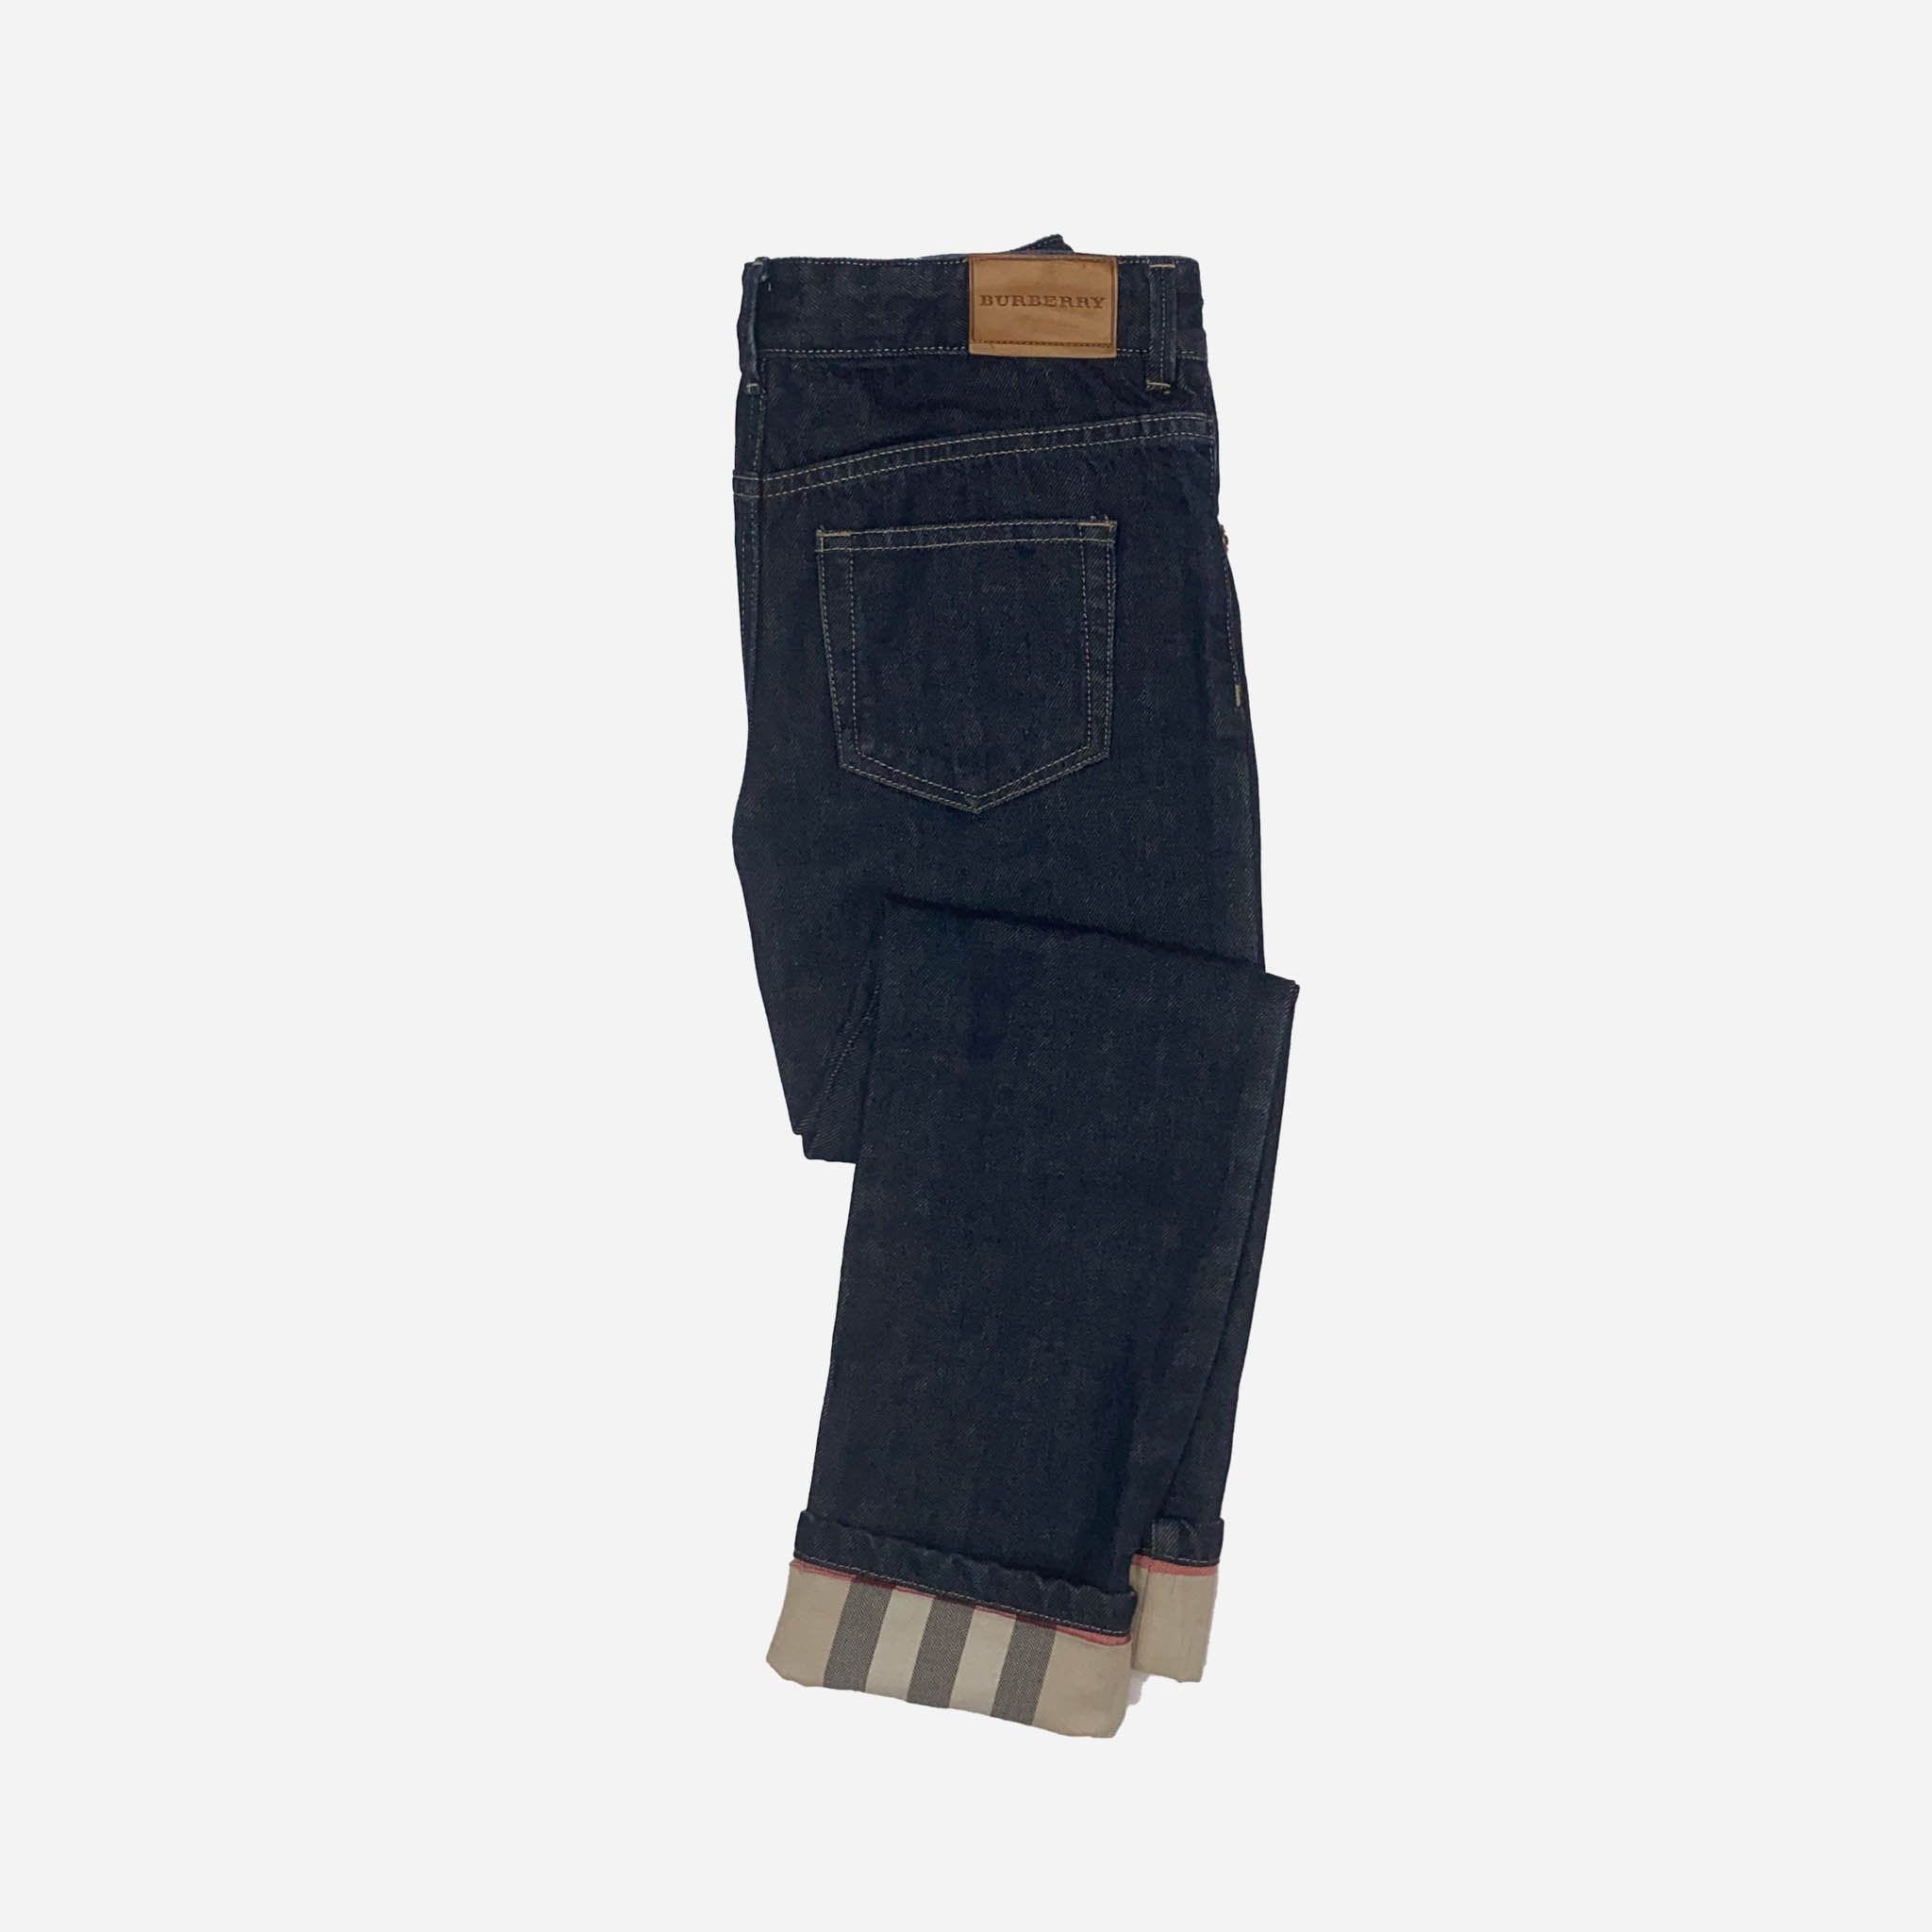 Designer Jeans - 8